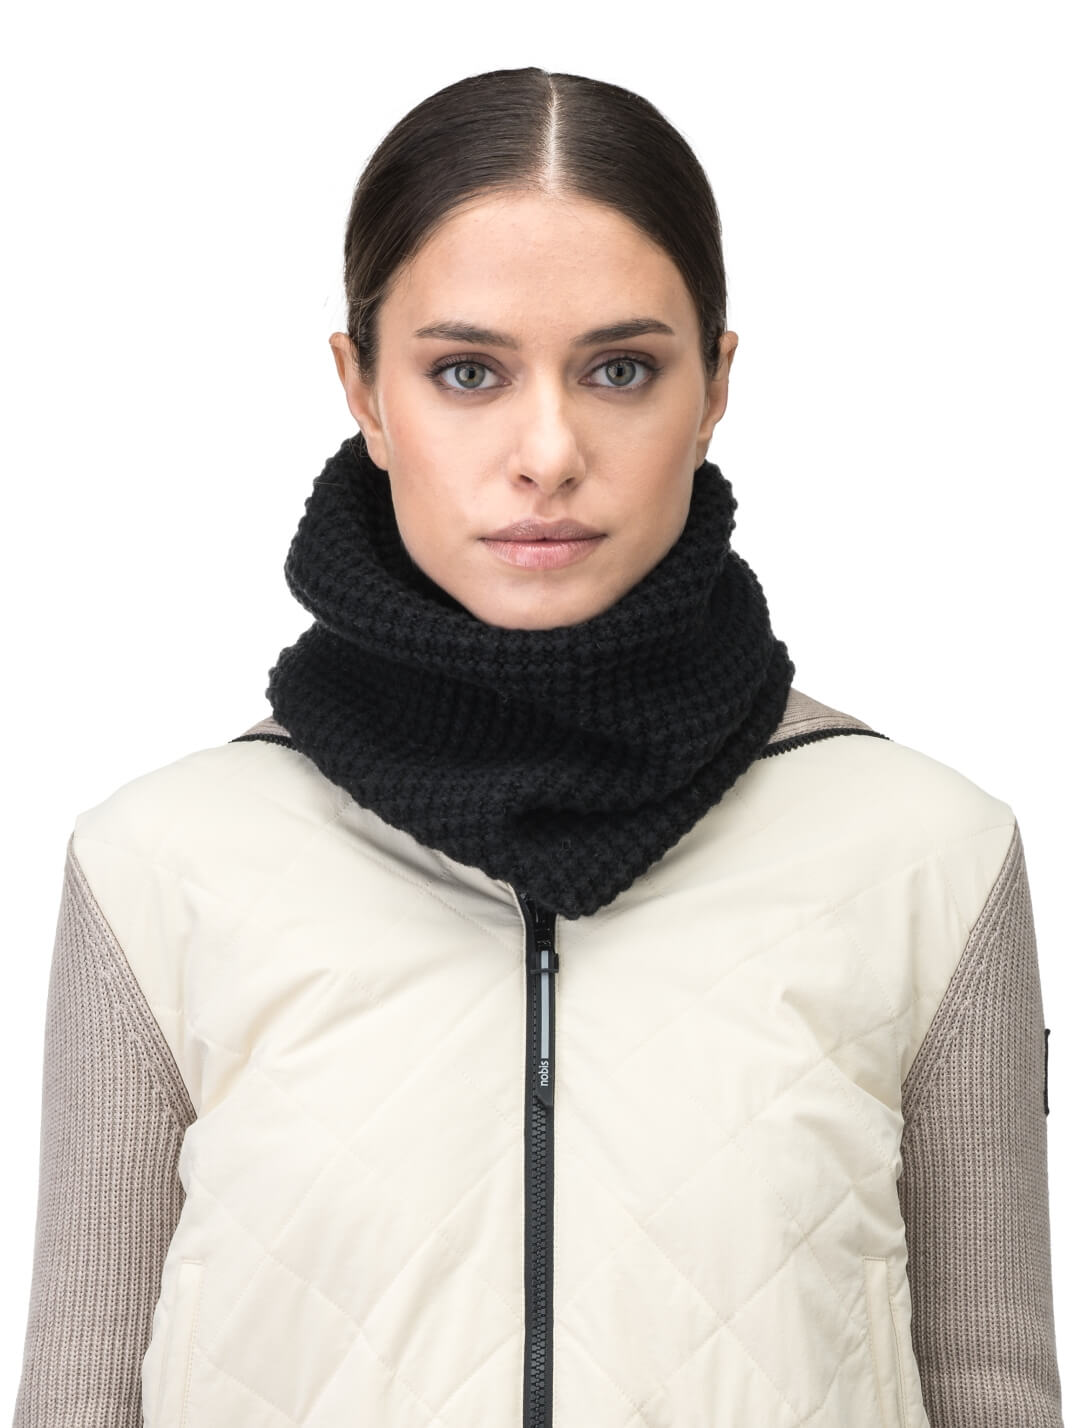 Alder Unisex Knit Gaiter infinity scarf in superfine alpaca and extrafine merino wool, in Black